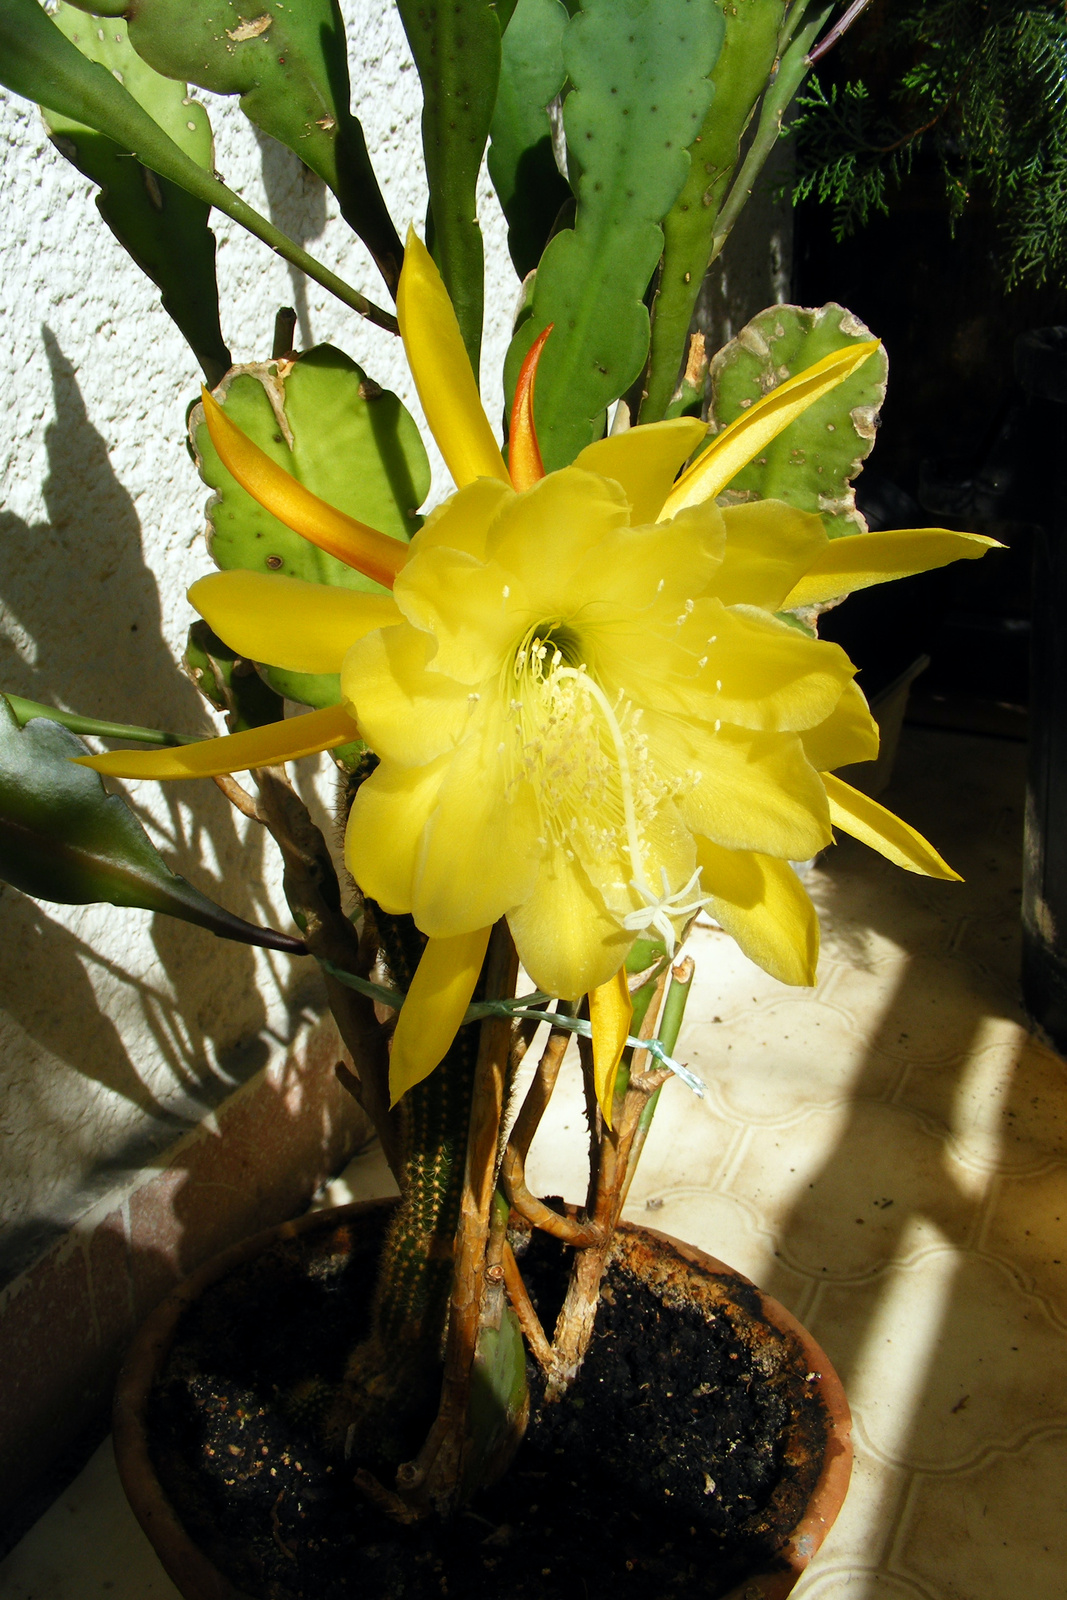 | Elkeveredett fotók #12.3 - Nagyi kaktusza |